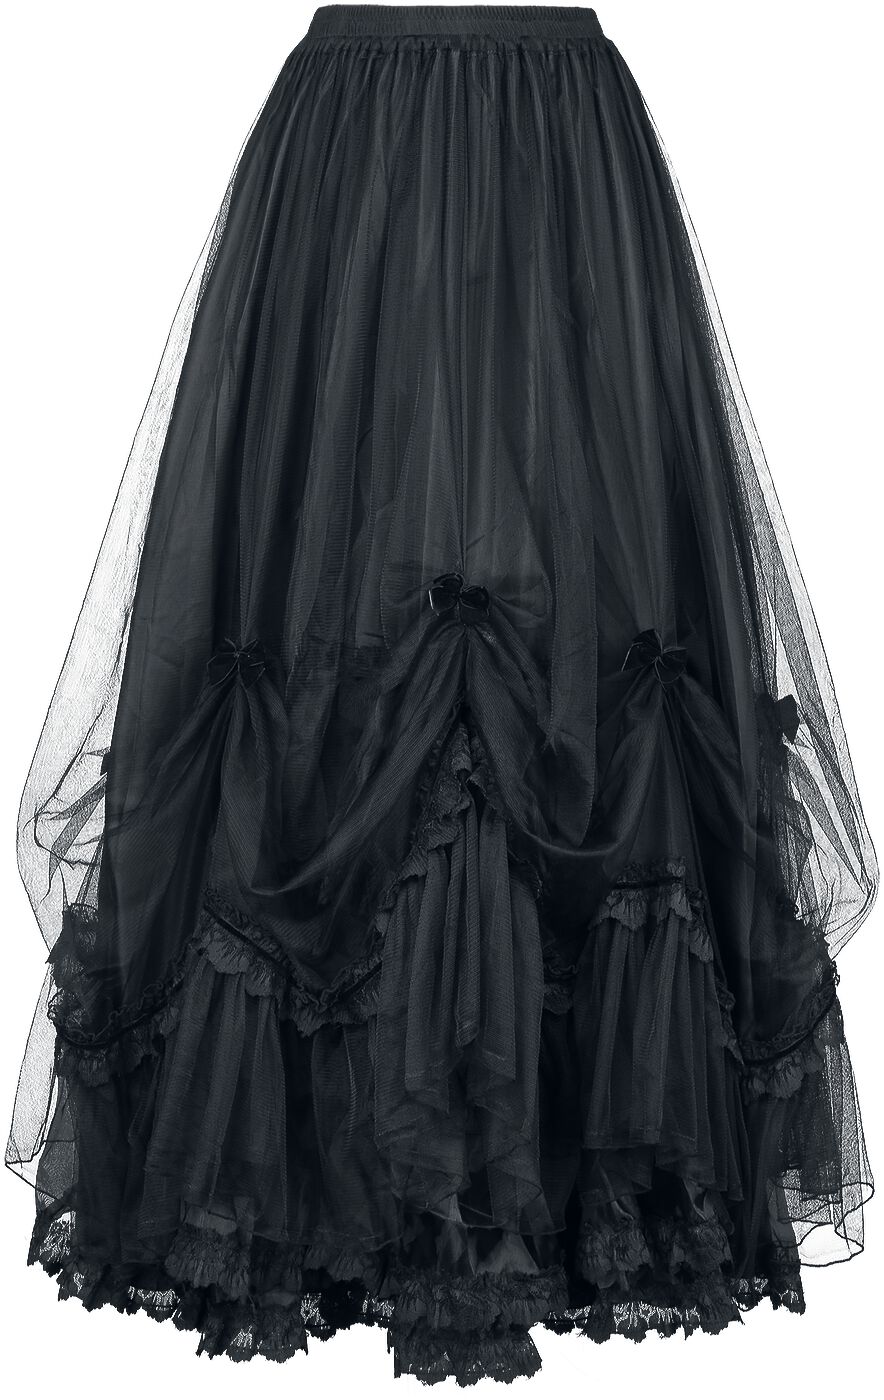 Sinister Gothic - Mittelalter Langer Rock - Gothic Skirt - S bis XXL - für Damen - Größe S - schwarz